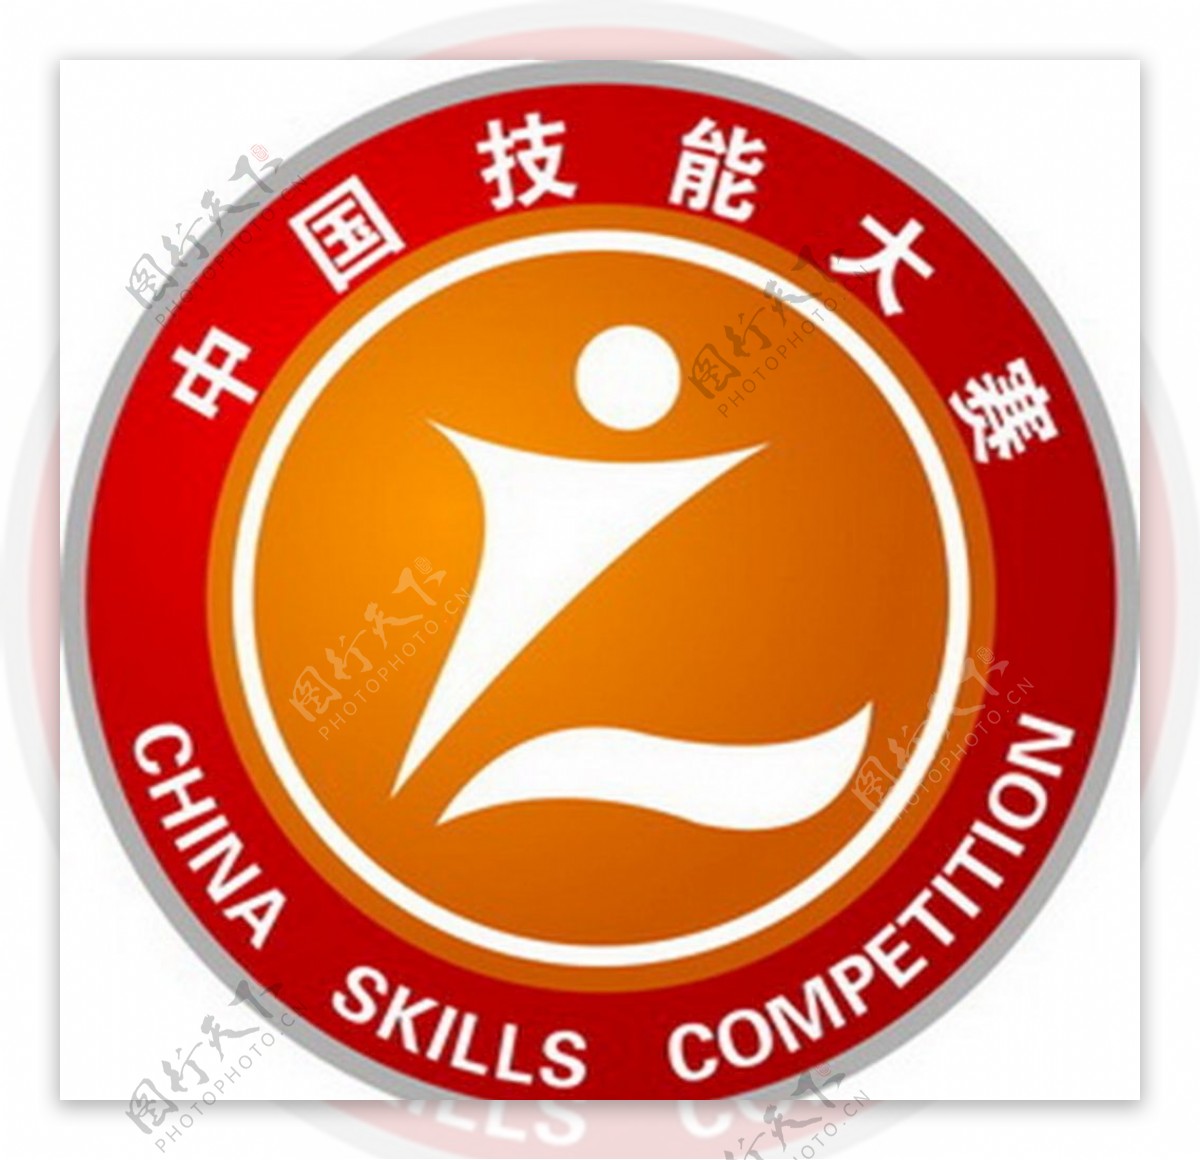 中国技能大赛logo